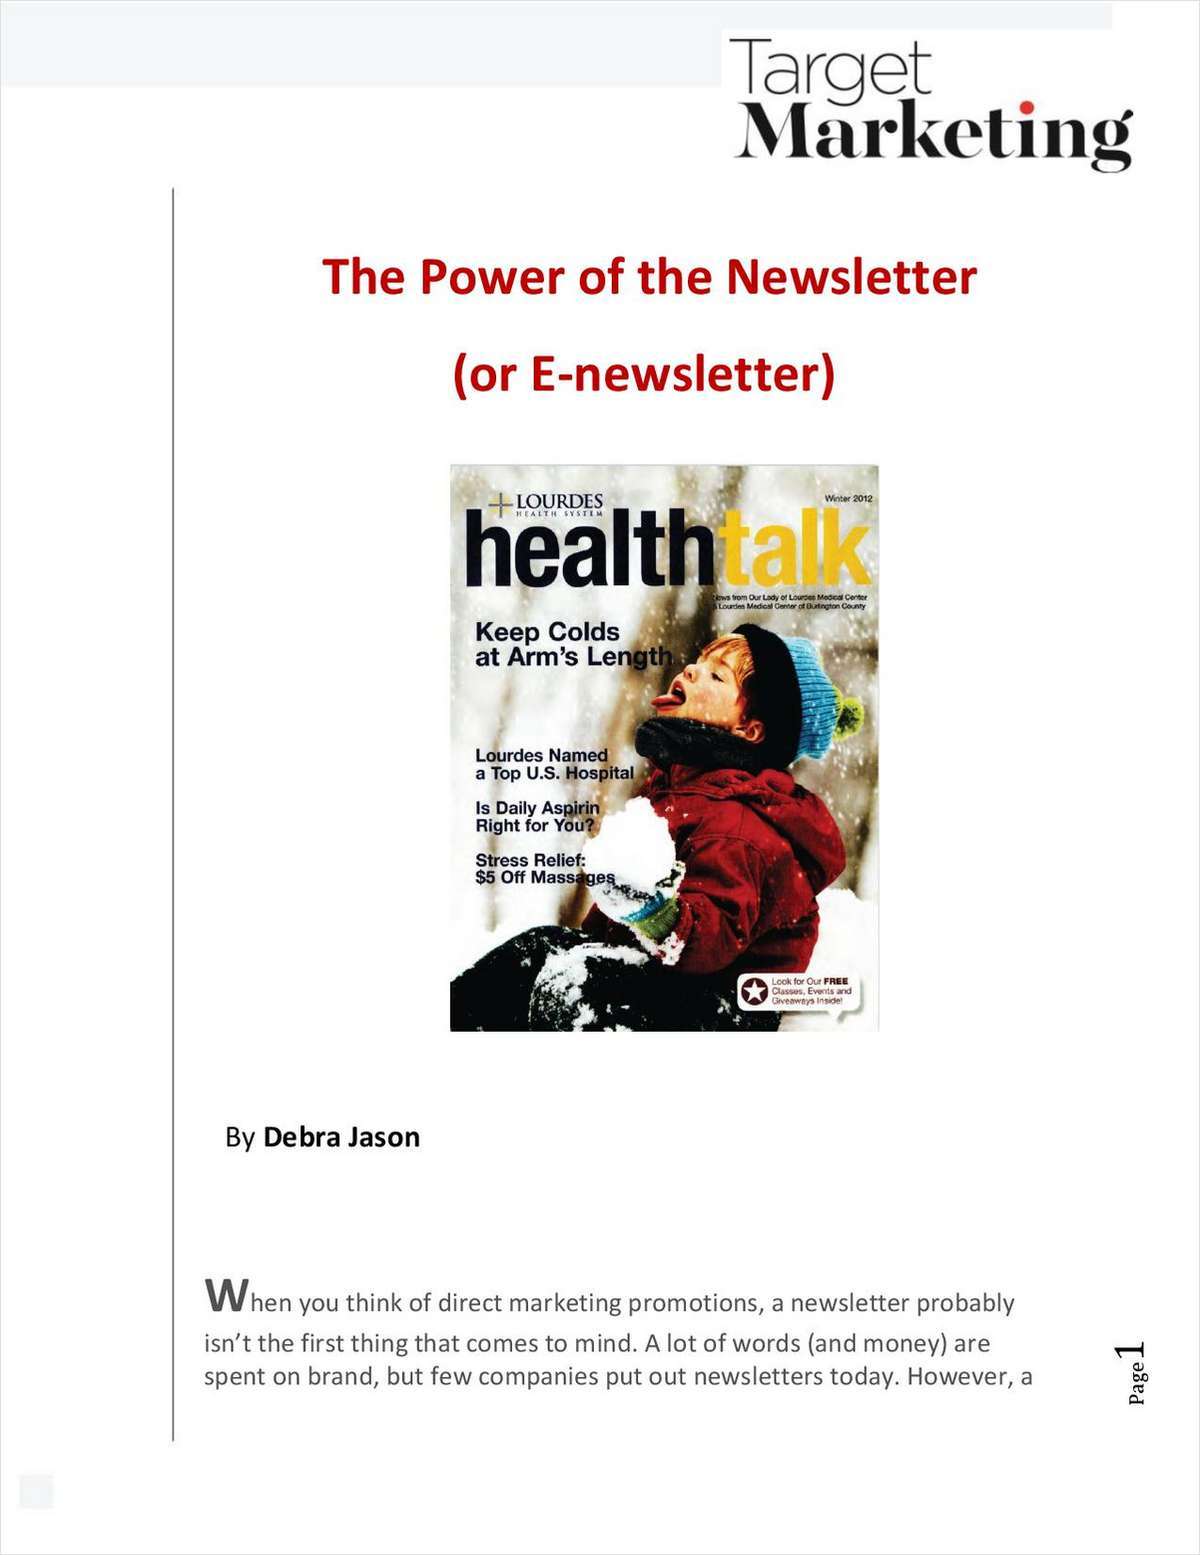 The Power of the Newsletter (or E-newsletter)